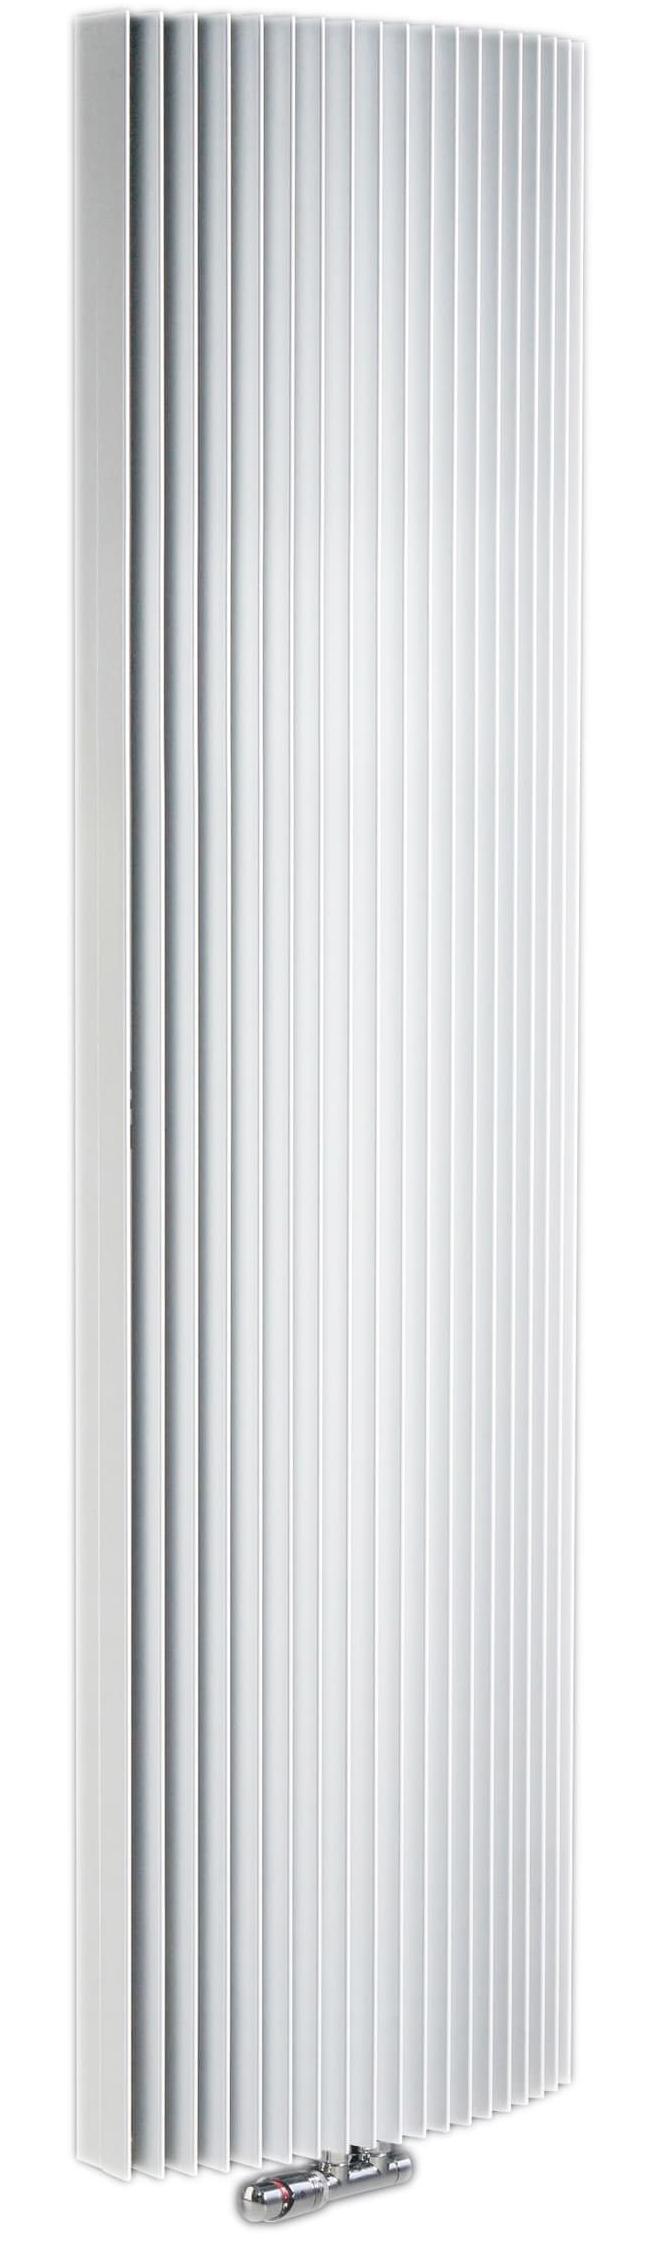 Дизайн-радиатор Jaga Iguana Arco 1800х290 H180 L029 белый